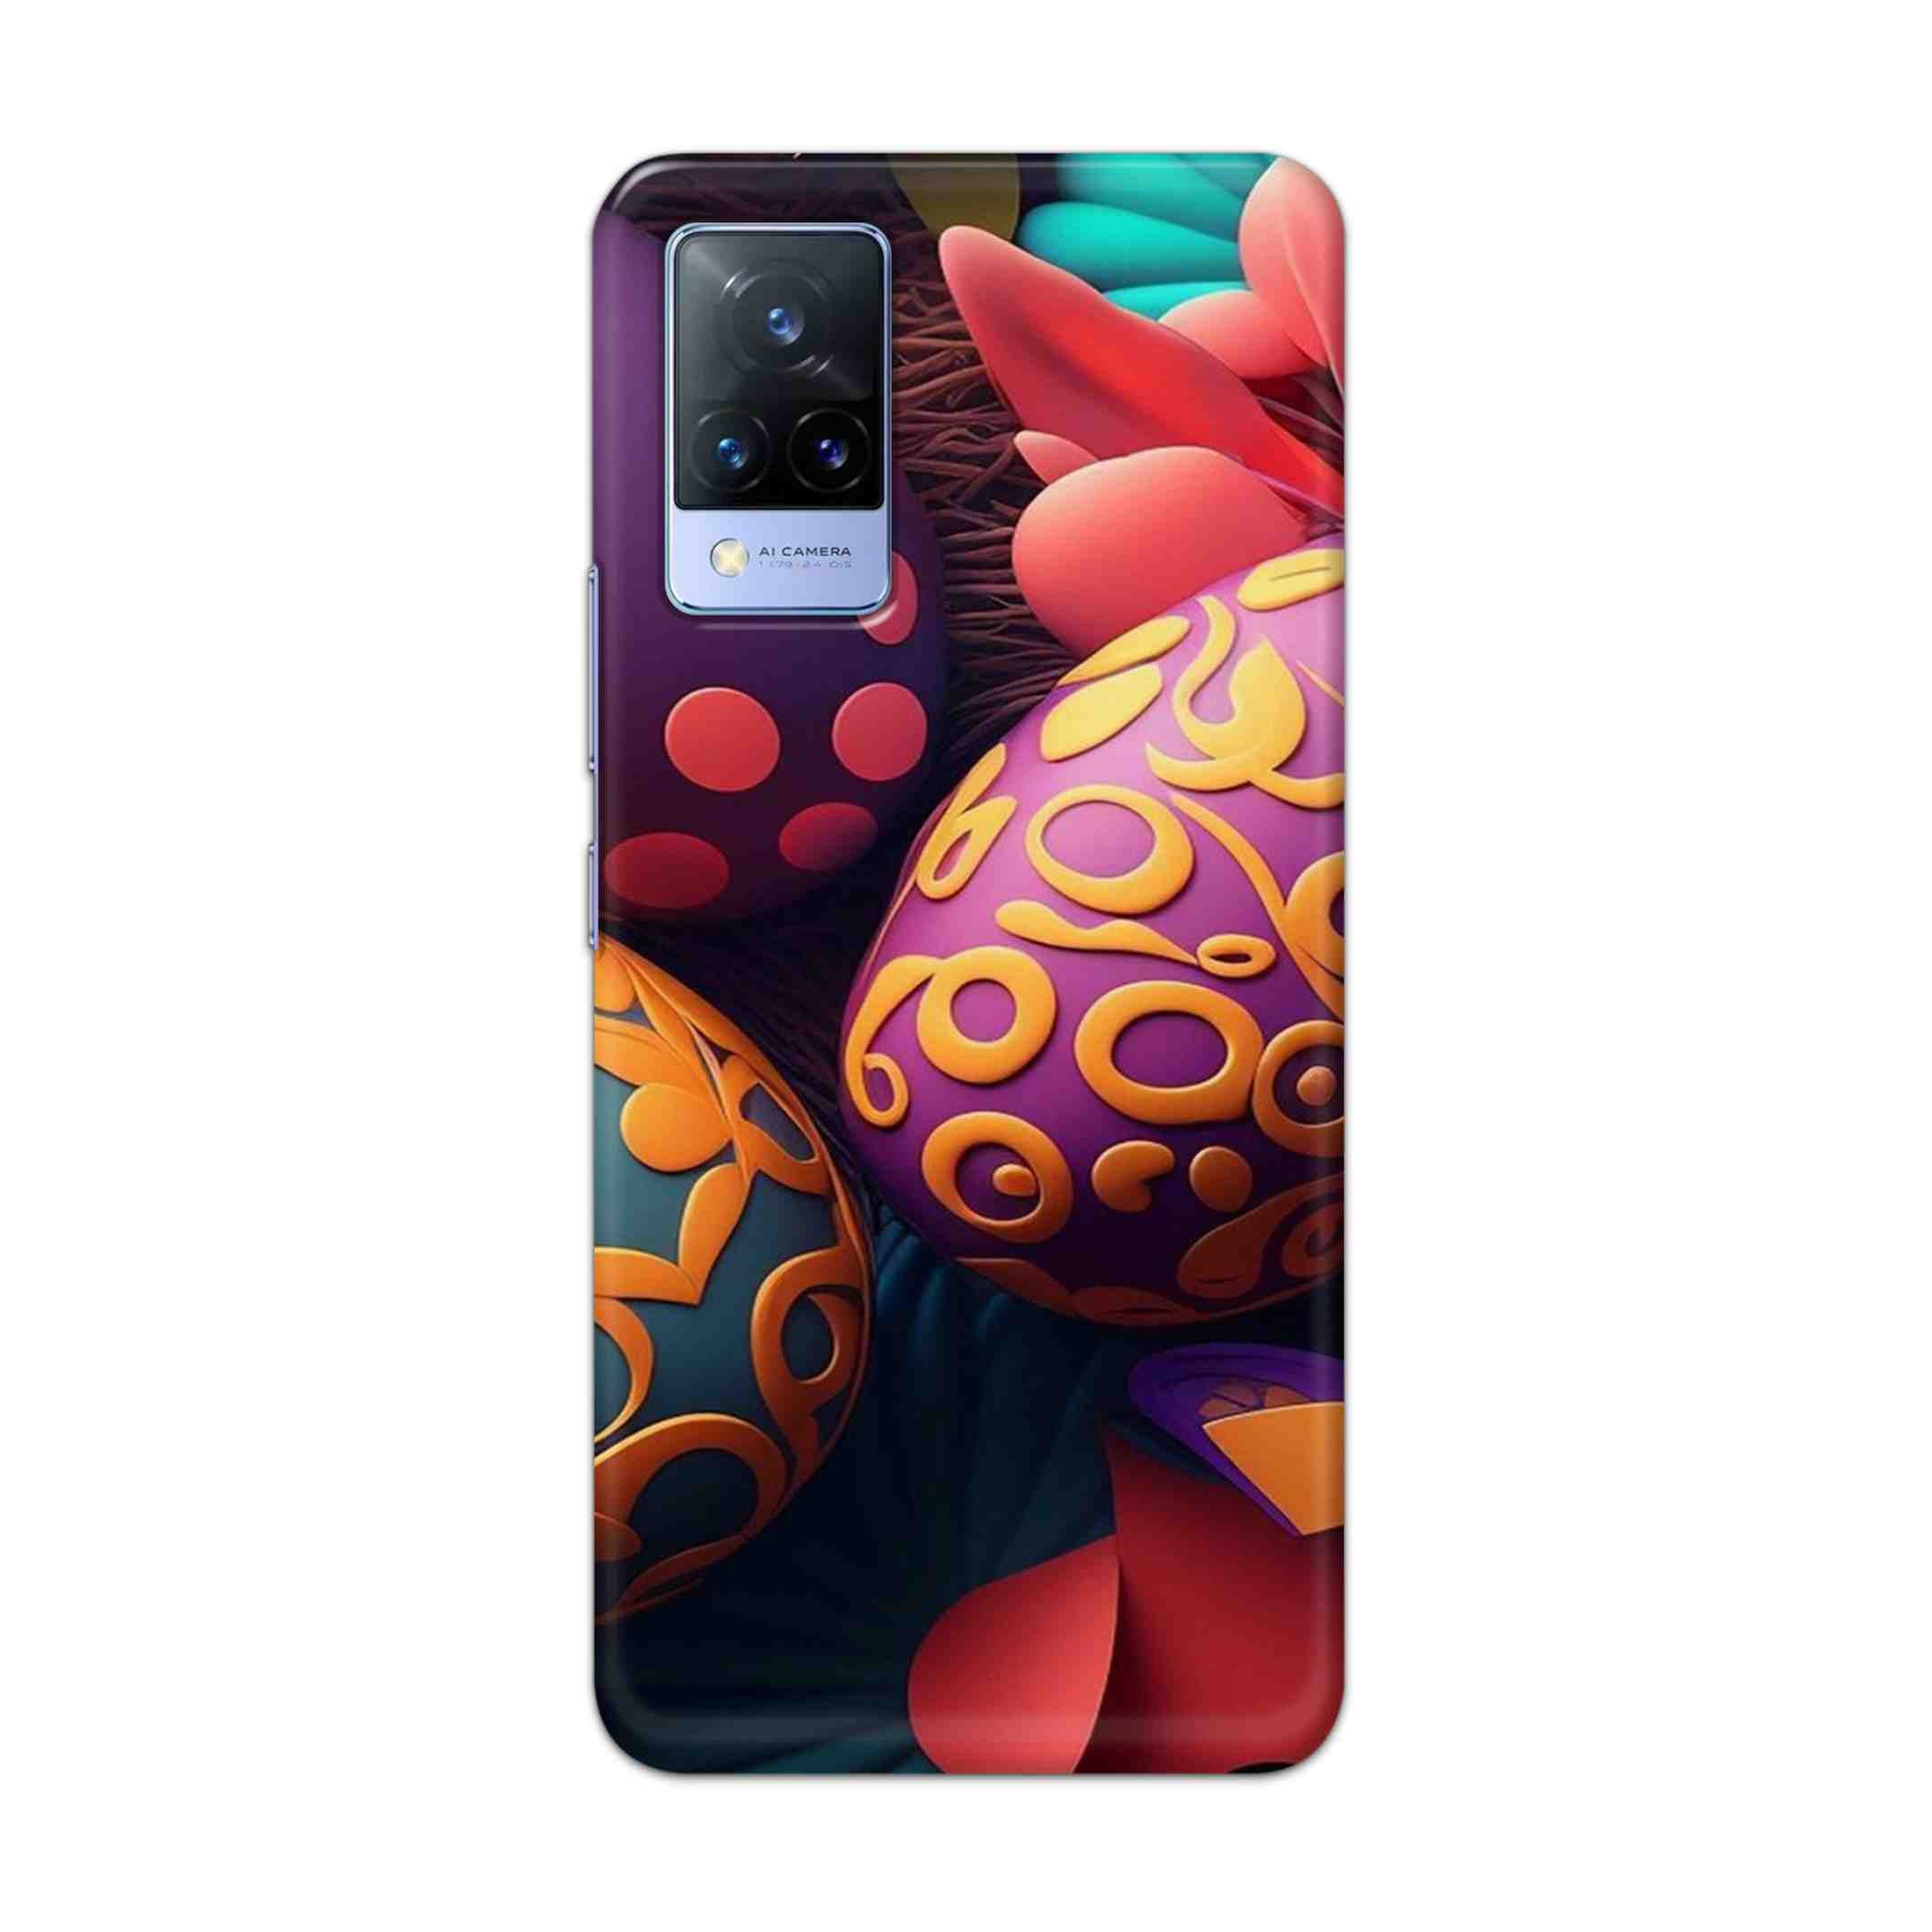 Buy Easter Egg Hard Back Mobile Phone Case Cover For Vivo V21e Online